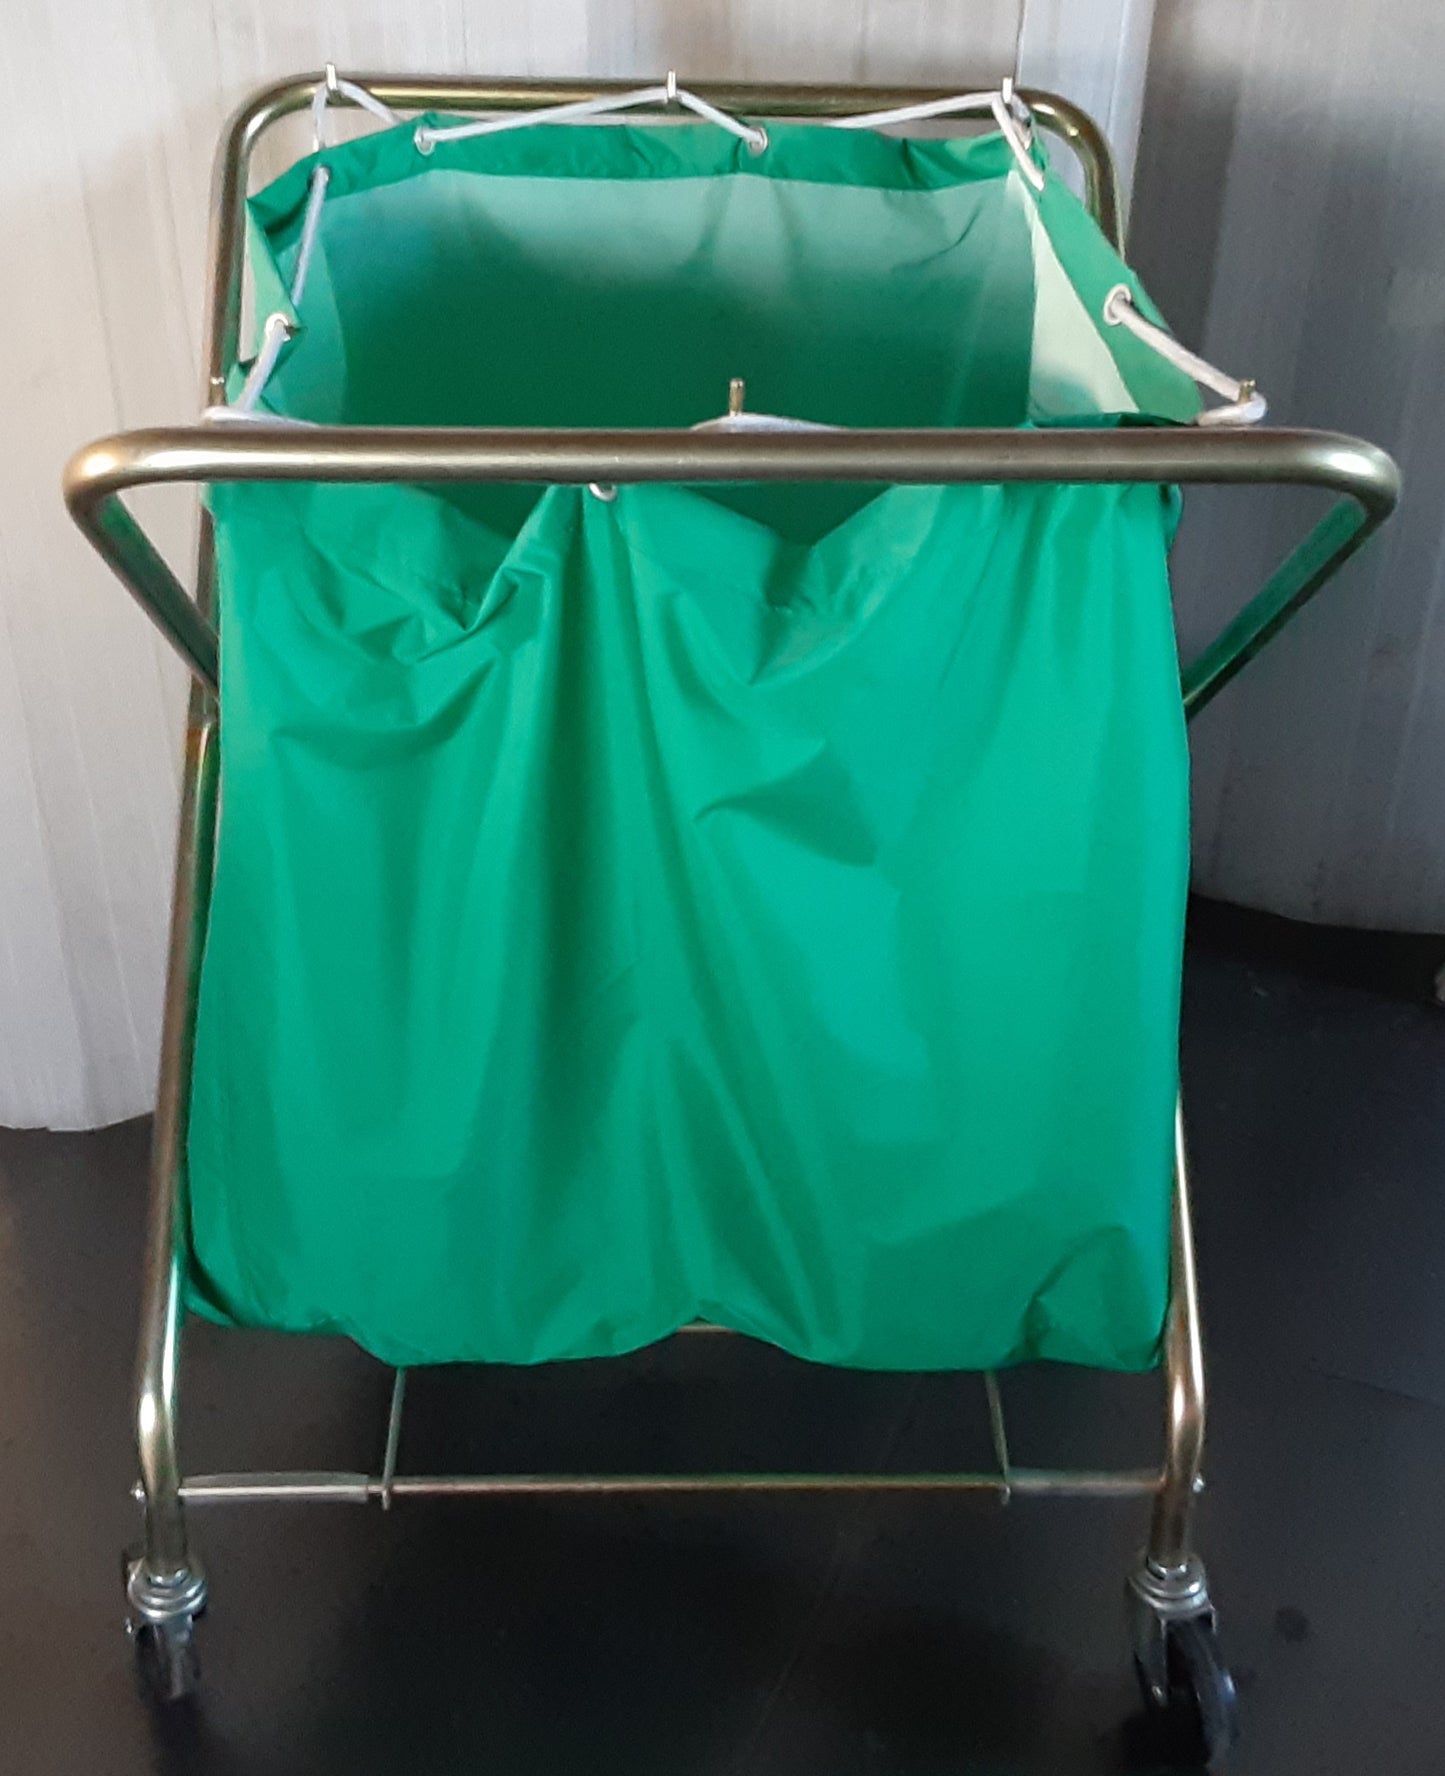 山崎産業製 ダストカート コンドルダストカート (緑 大) フレーム･袋セット 容量約210L yamazaki1-210l-1078